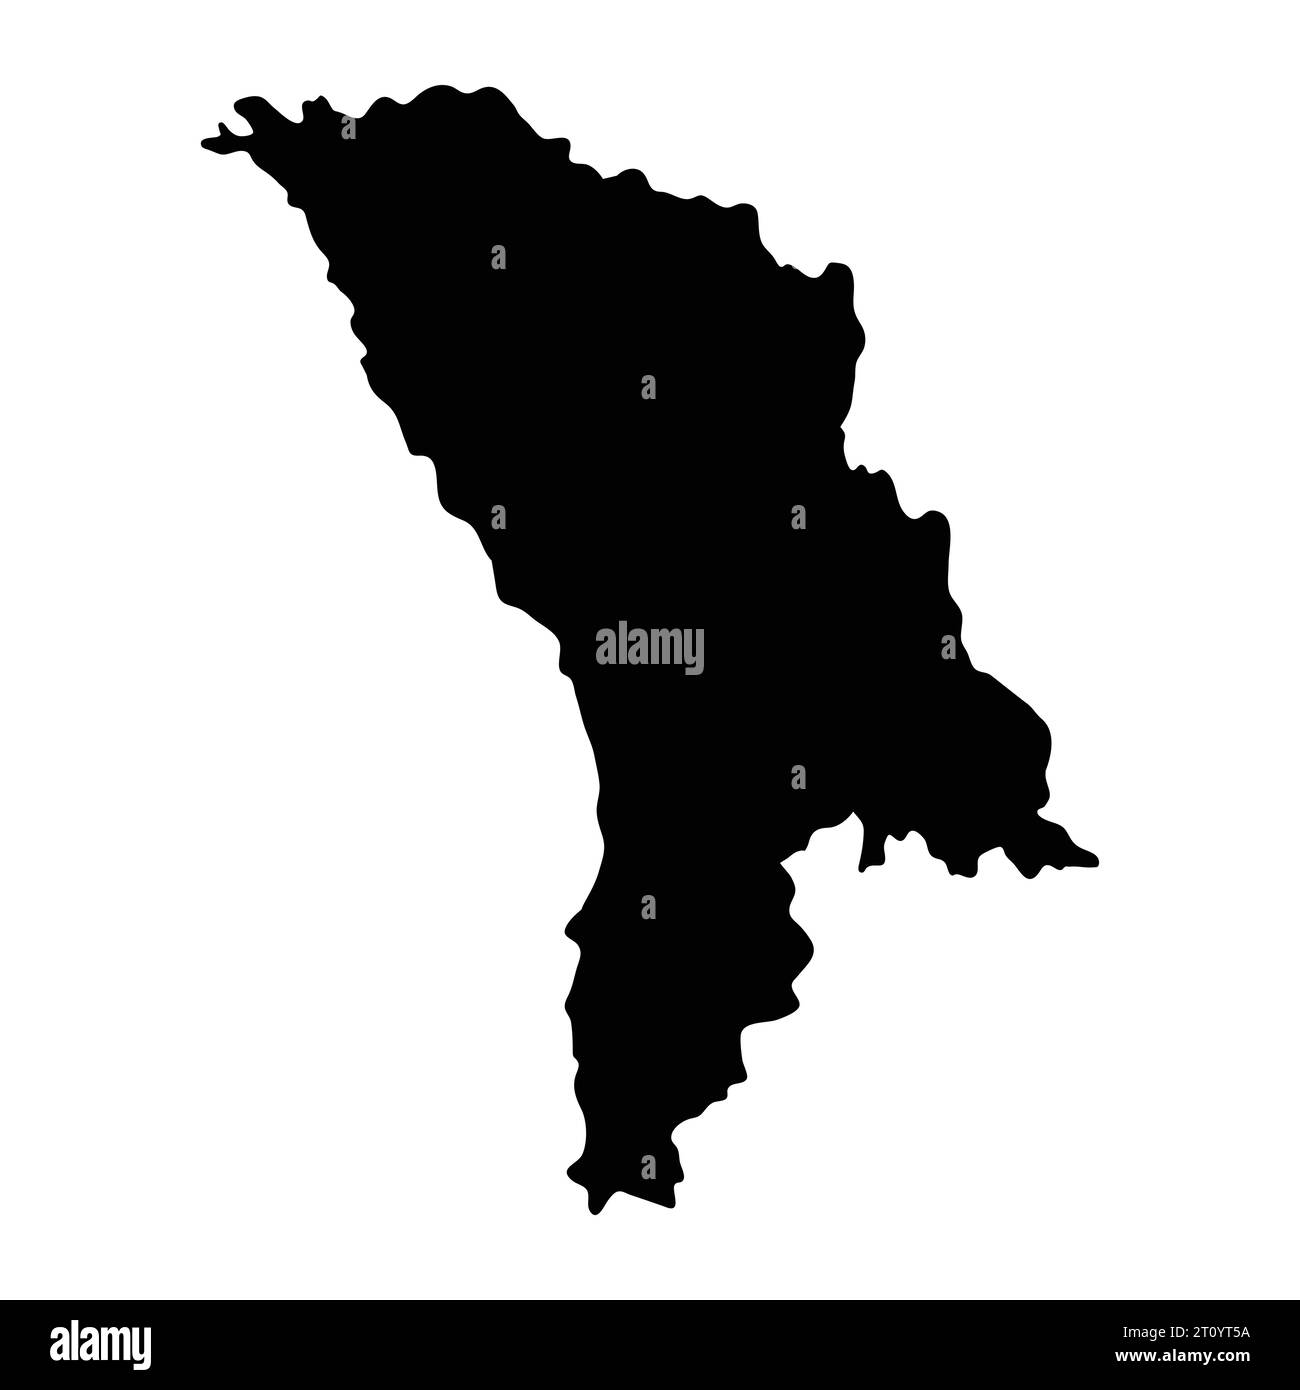 Moldawien Insel Karte Silhouette Region Gebiet Gebiet, schwarze Form Stil Illustration Stock Vektor